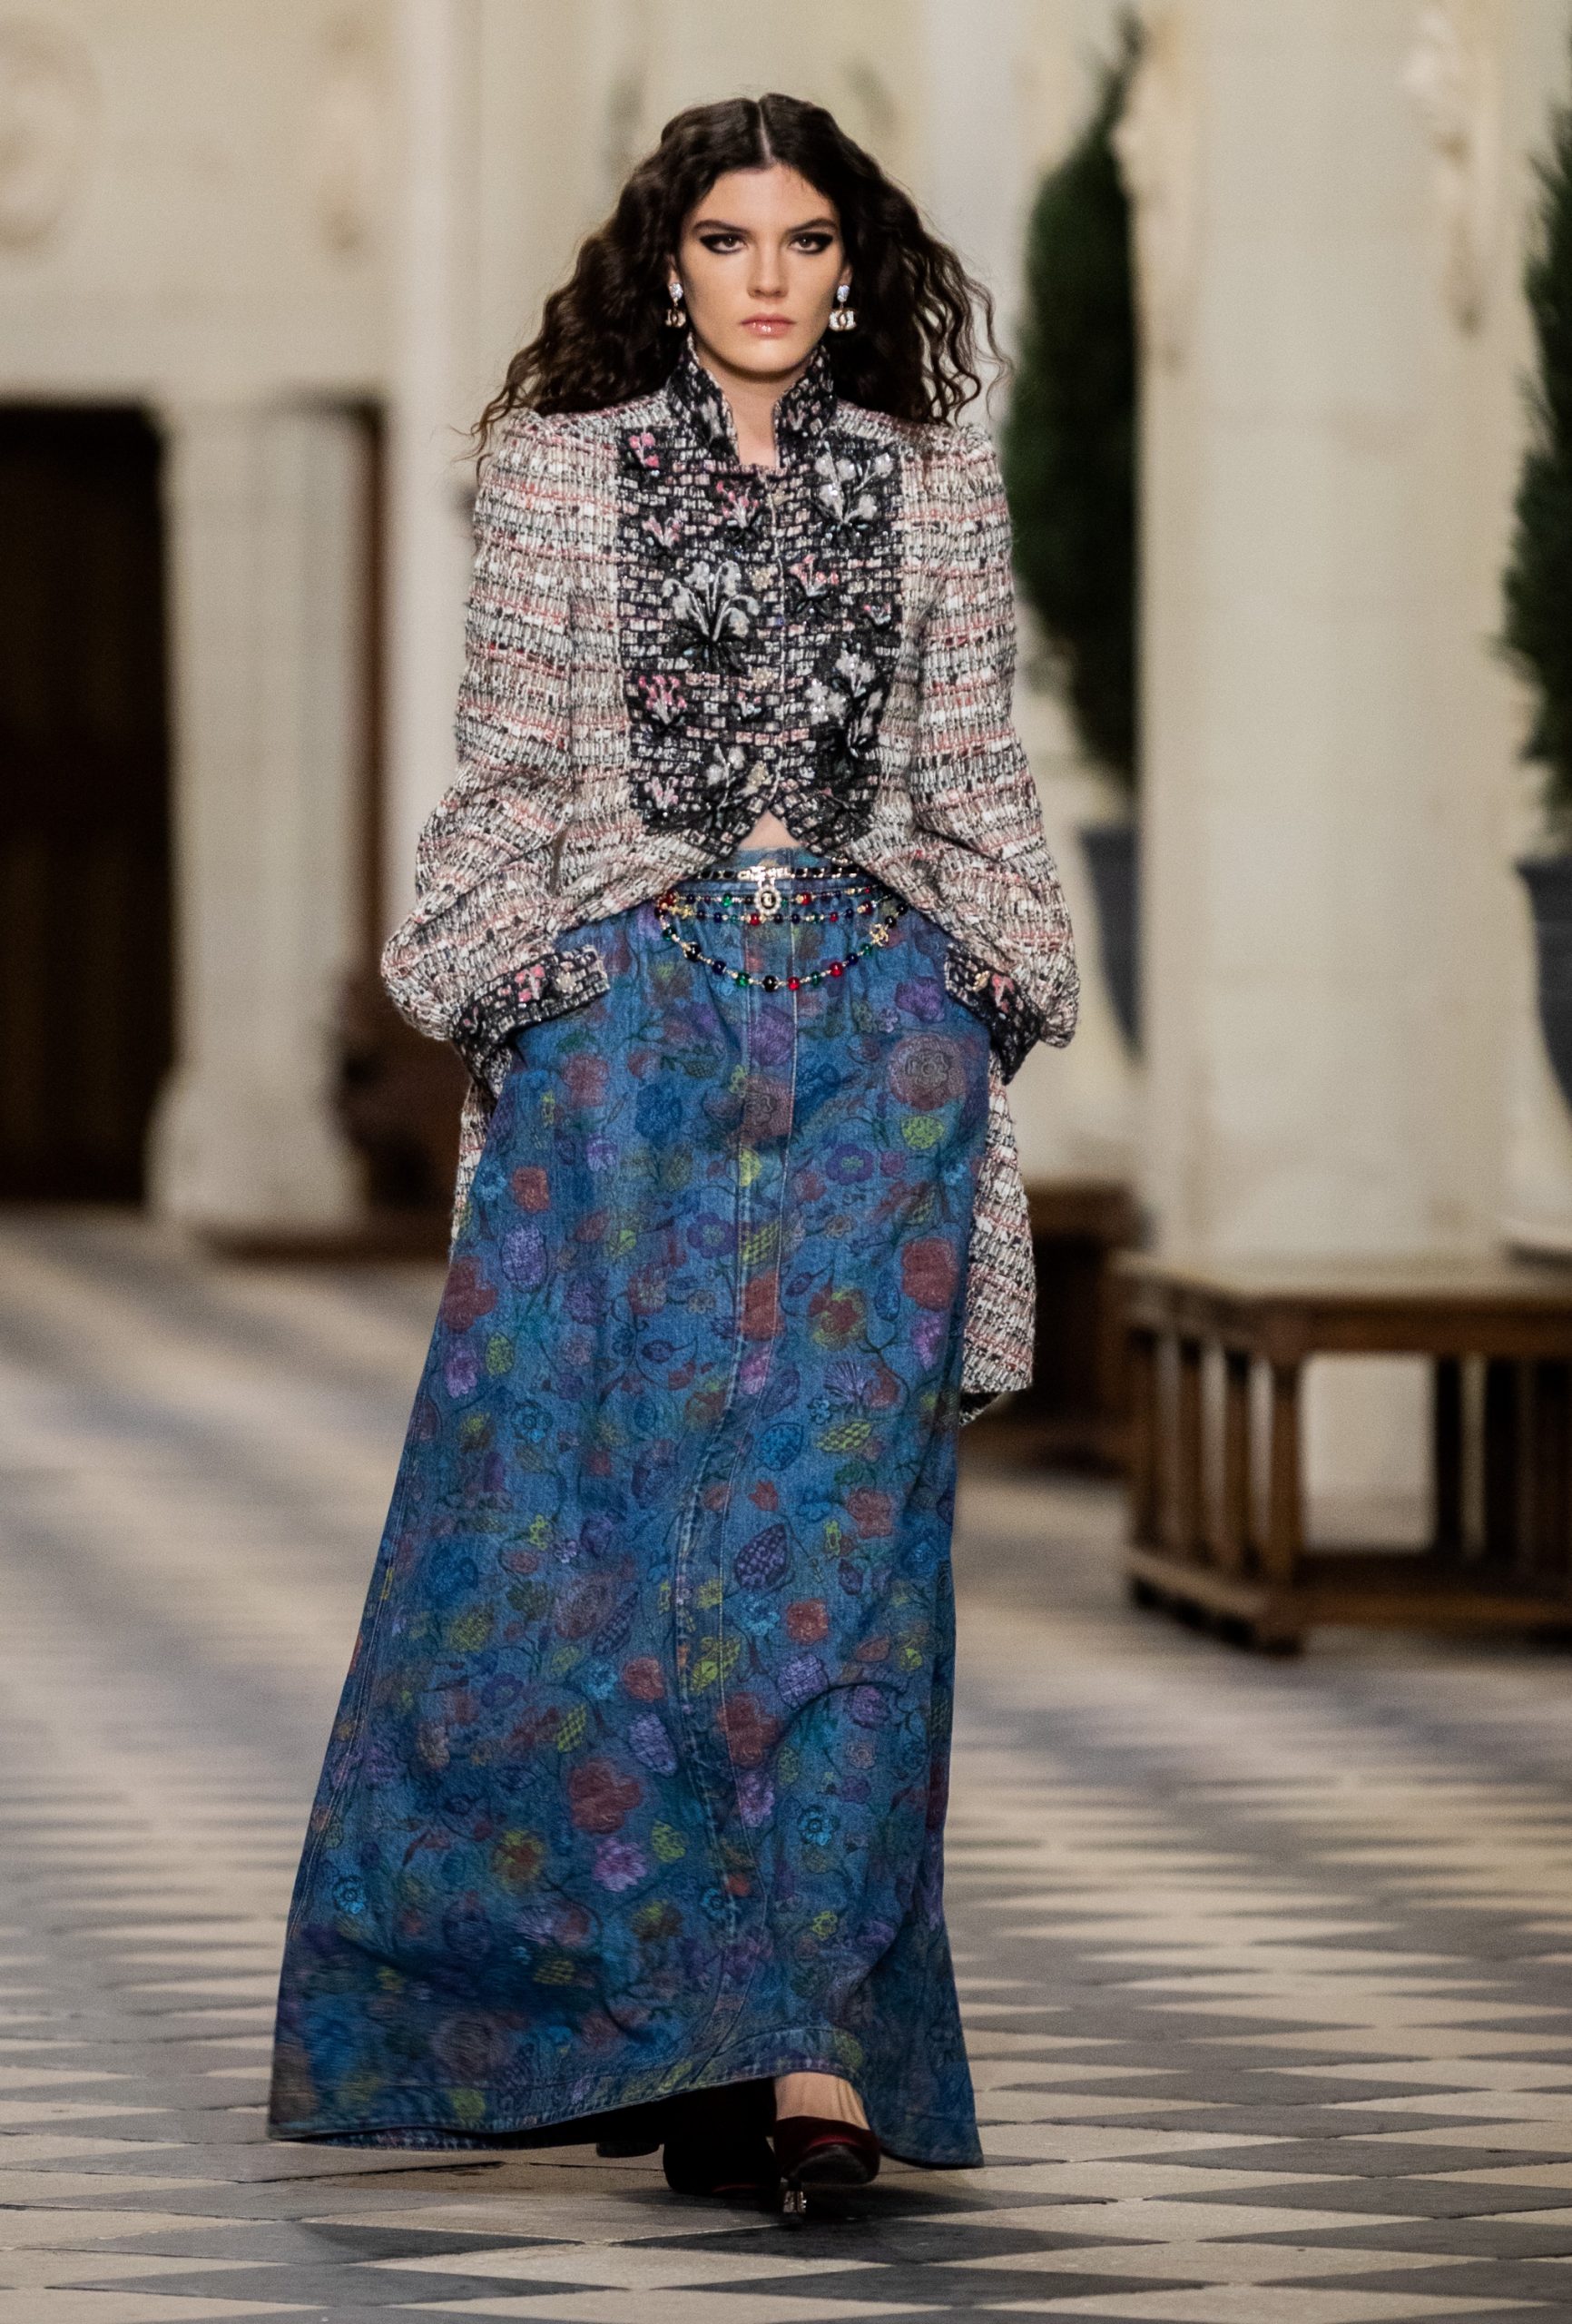 Chanel 'Le Château des Dames’ Métiers d’art 2020/21 Fashion Show | The ...